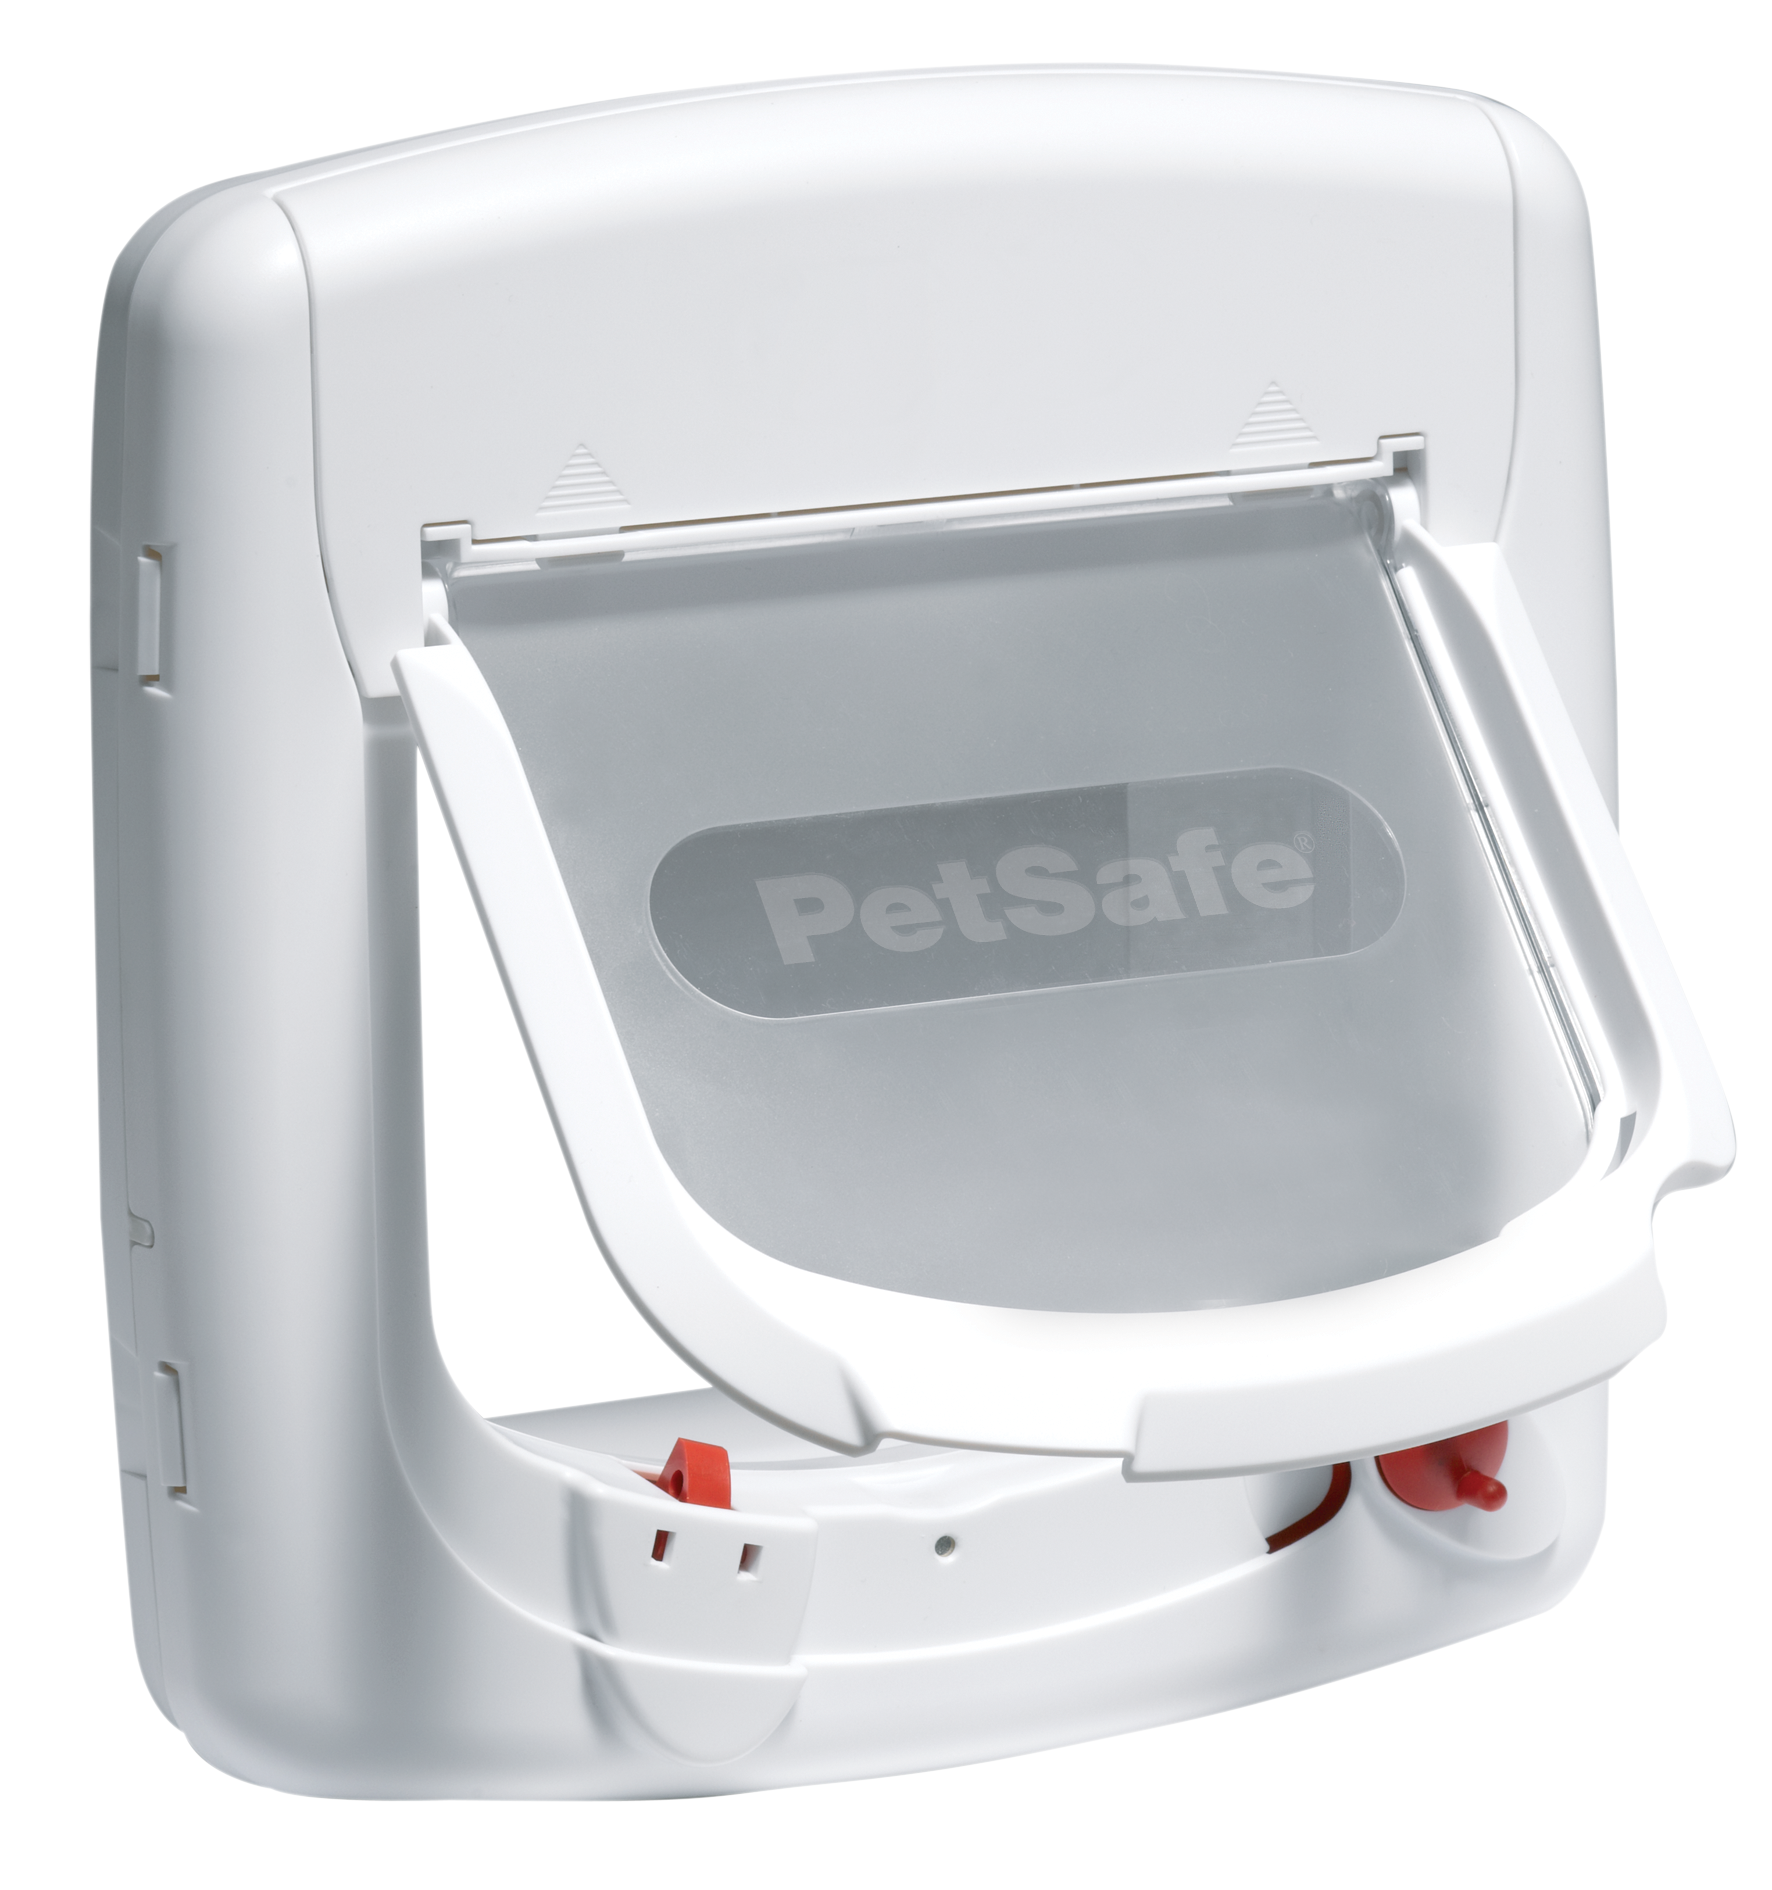 PETSAFE Staywell® Magnetische 4 Weiß Verschlussoptionen, Katzenklappe mit Katzenklappe Deluxe